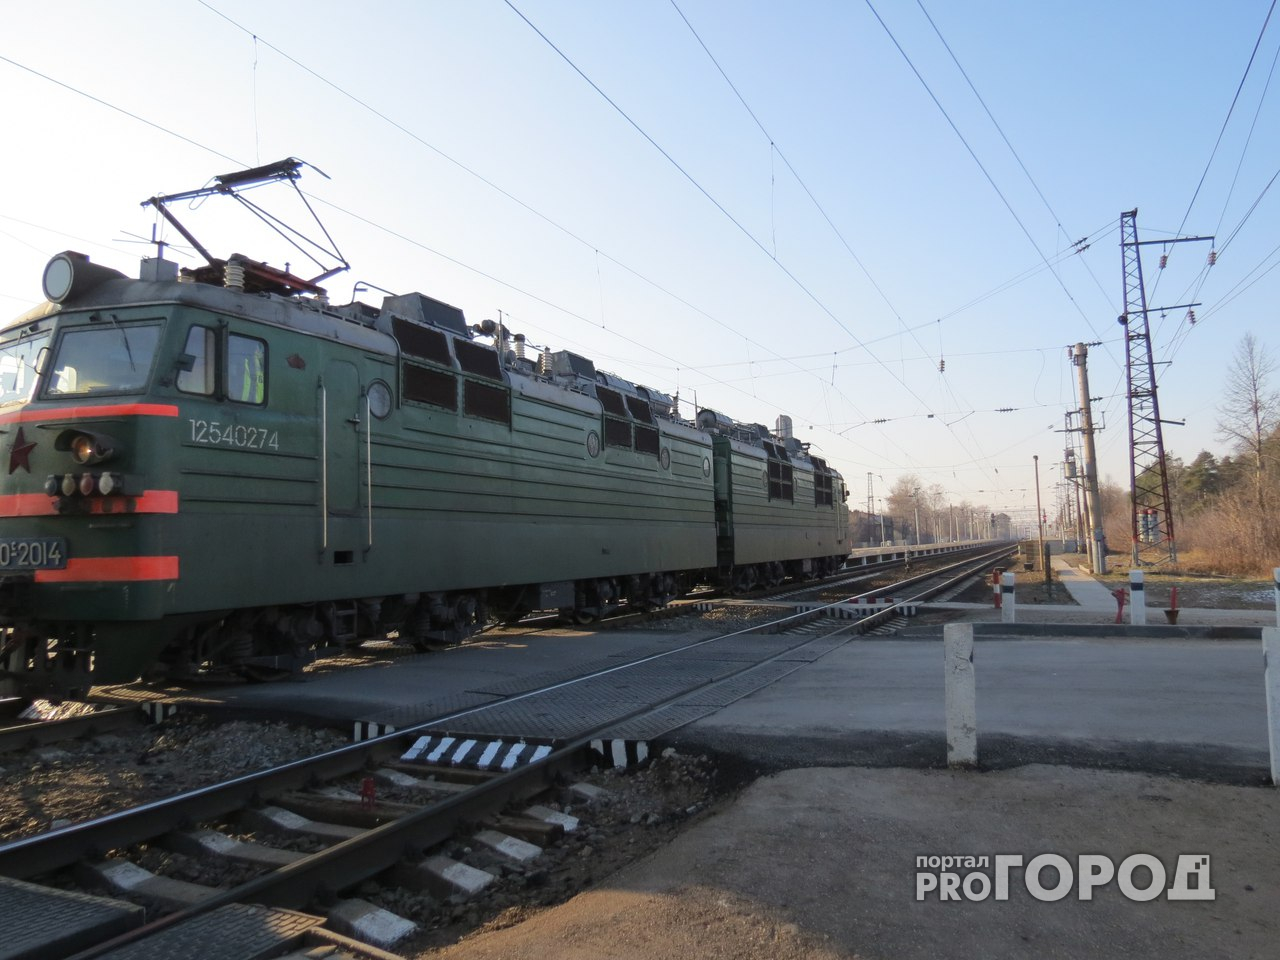 Жительница Тамалы выпала из поезда и отсудила 300 тысяч рублей